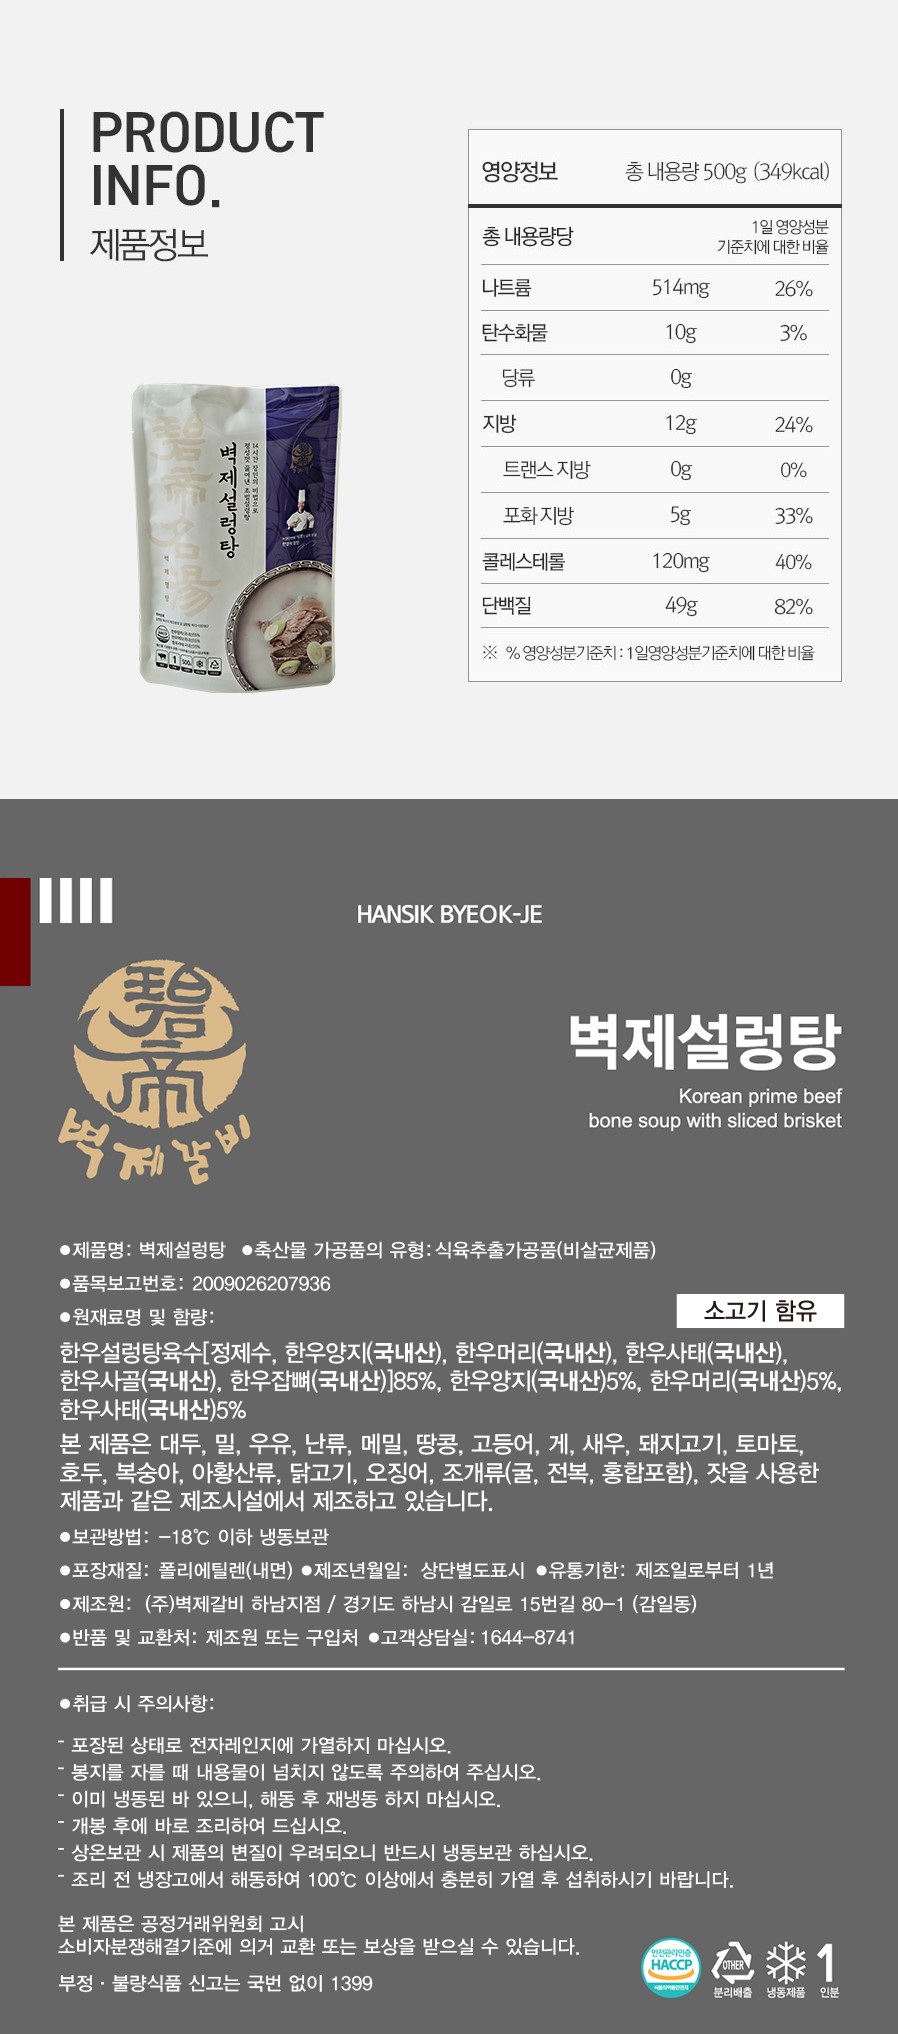 韓國食品-[碧帝排骨] 碧帝雪濃湯 500g